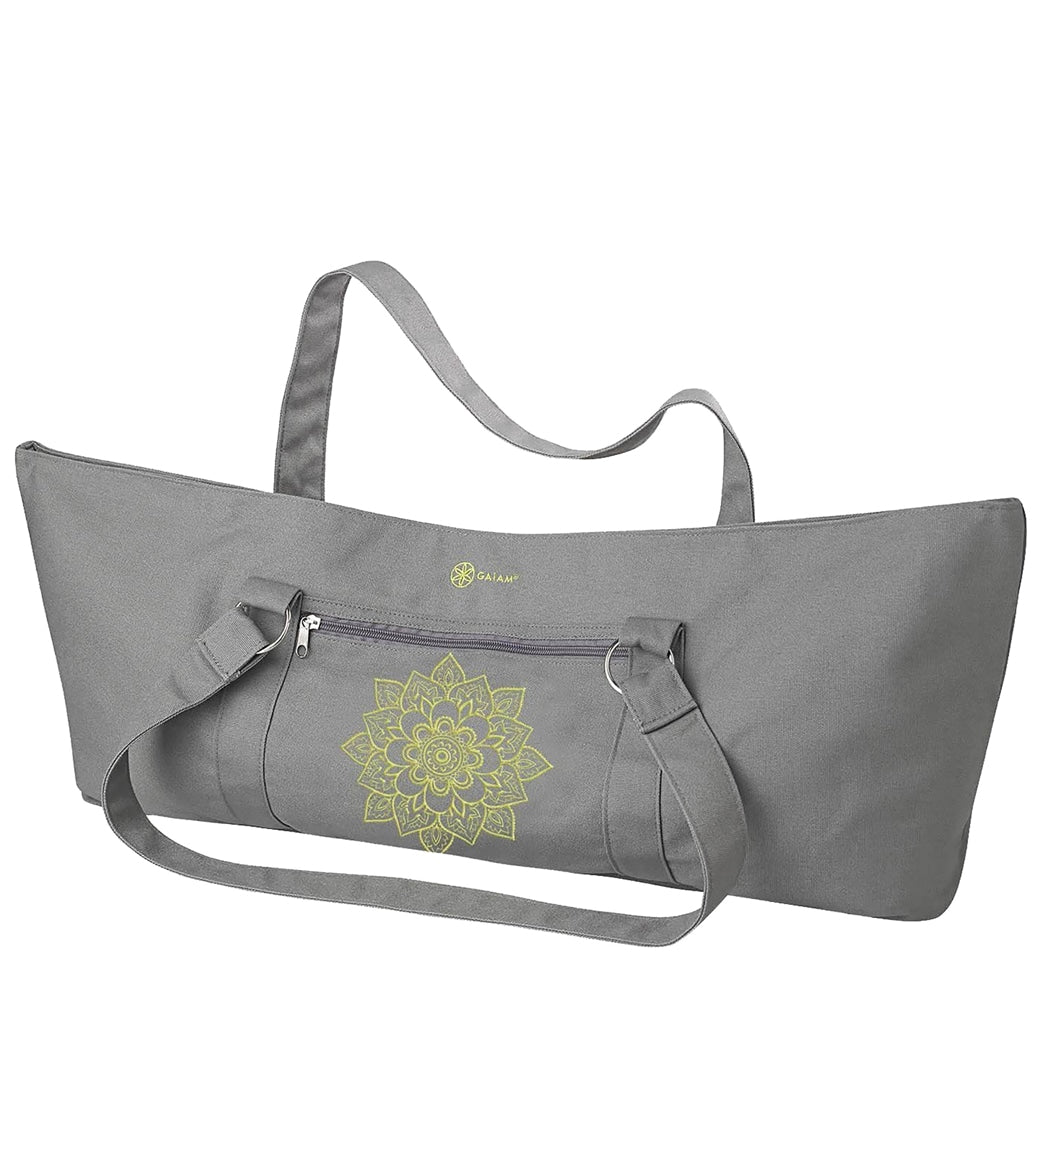 Gaiam Yoga Mat Tote Bag at